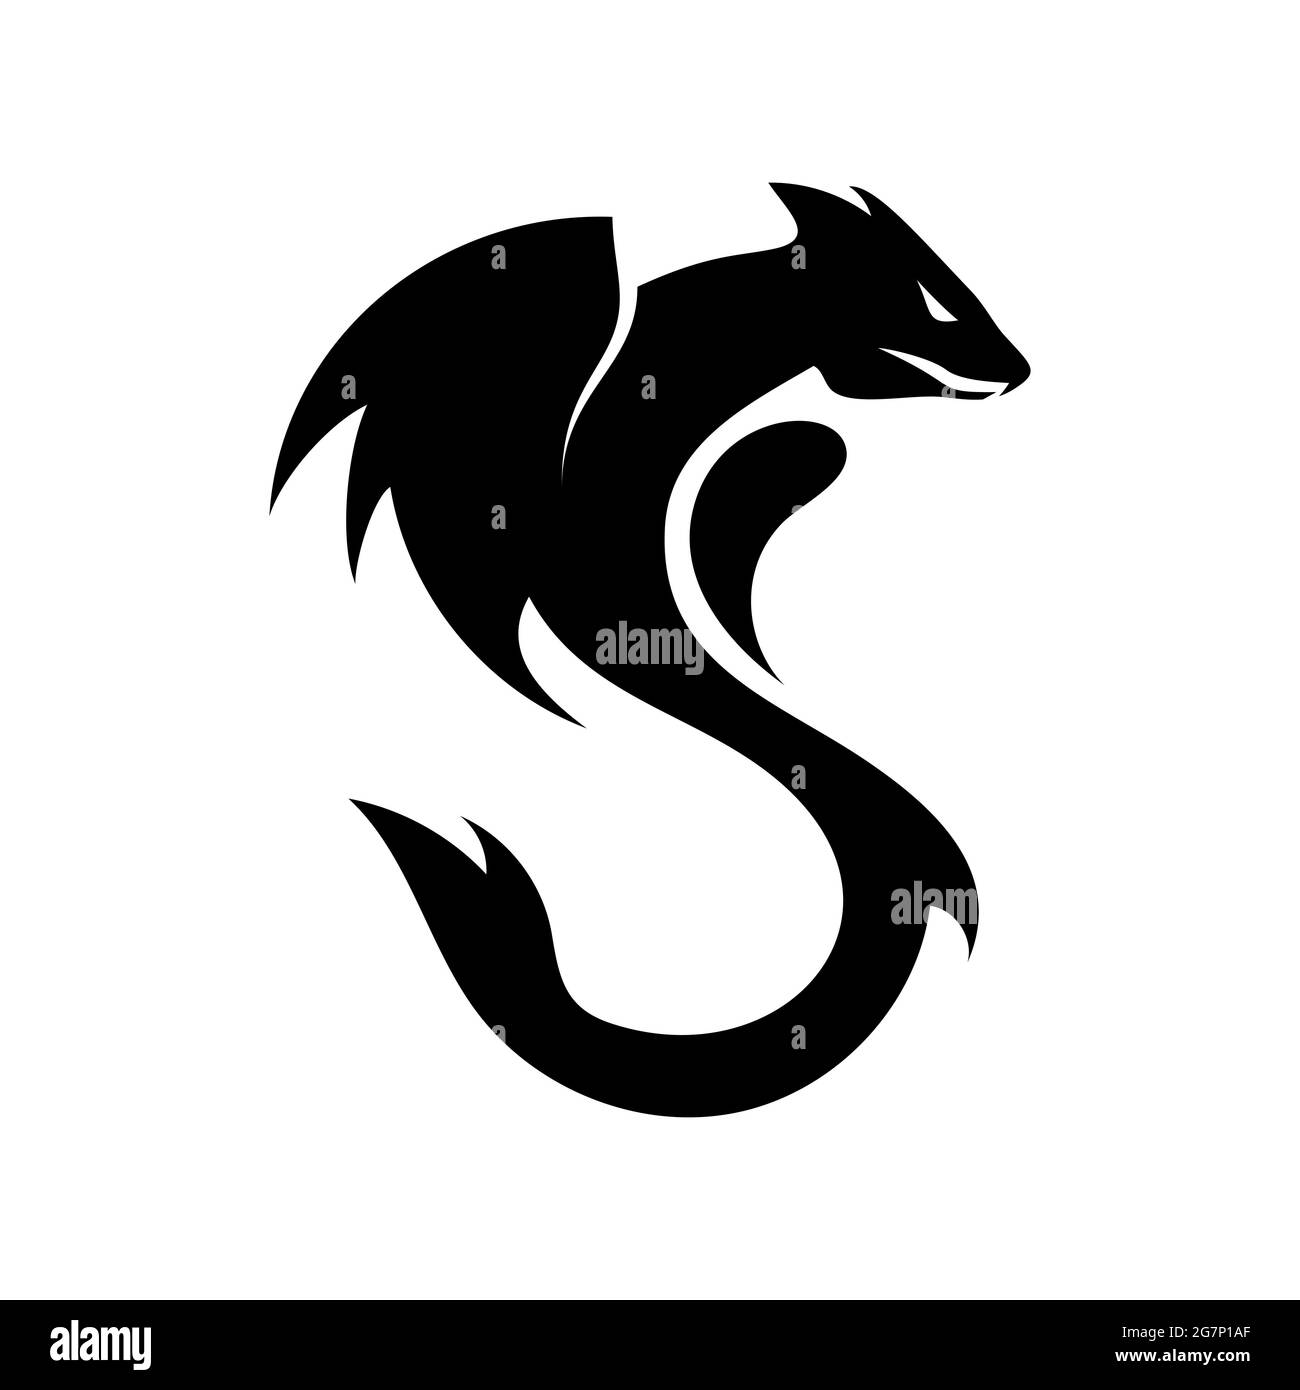 Plantilla de logo de dragón